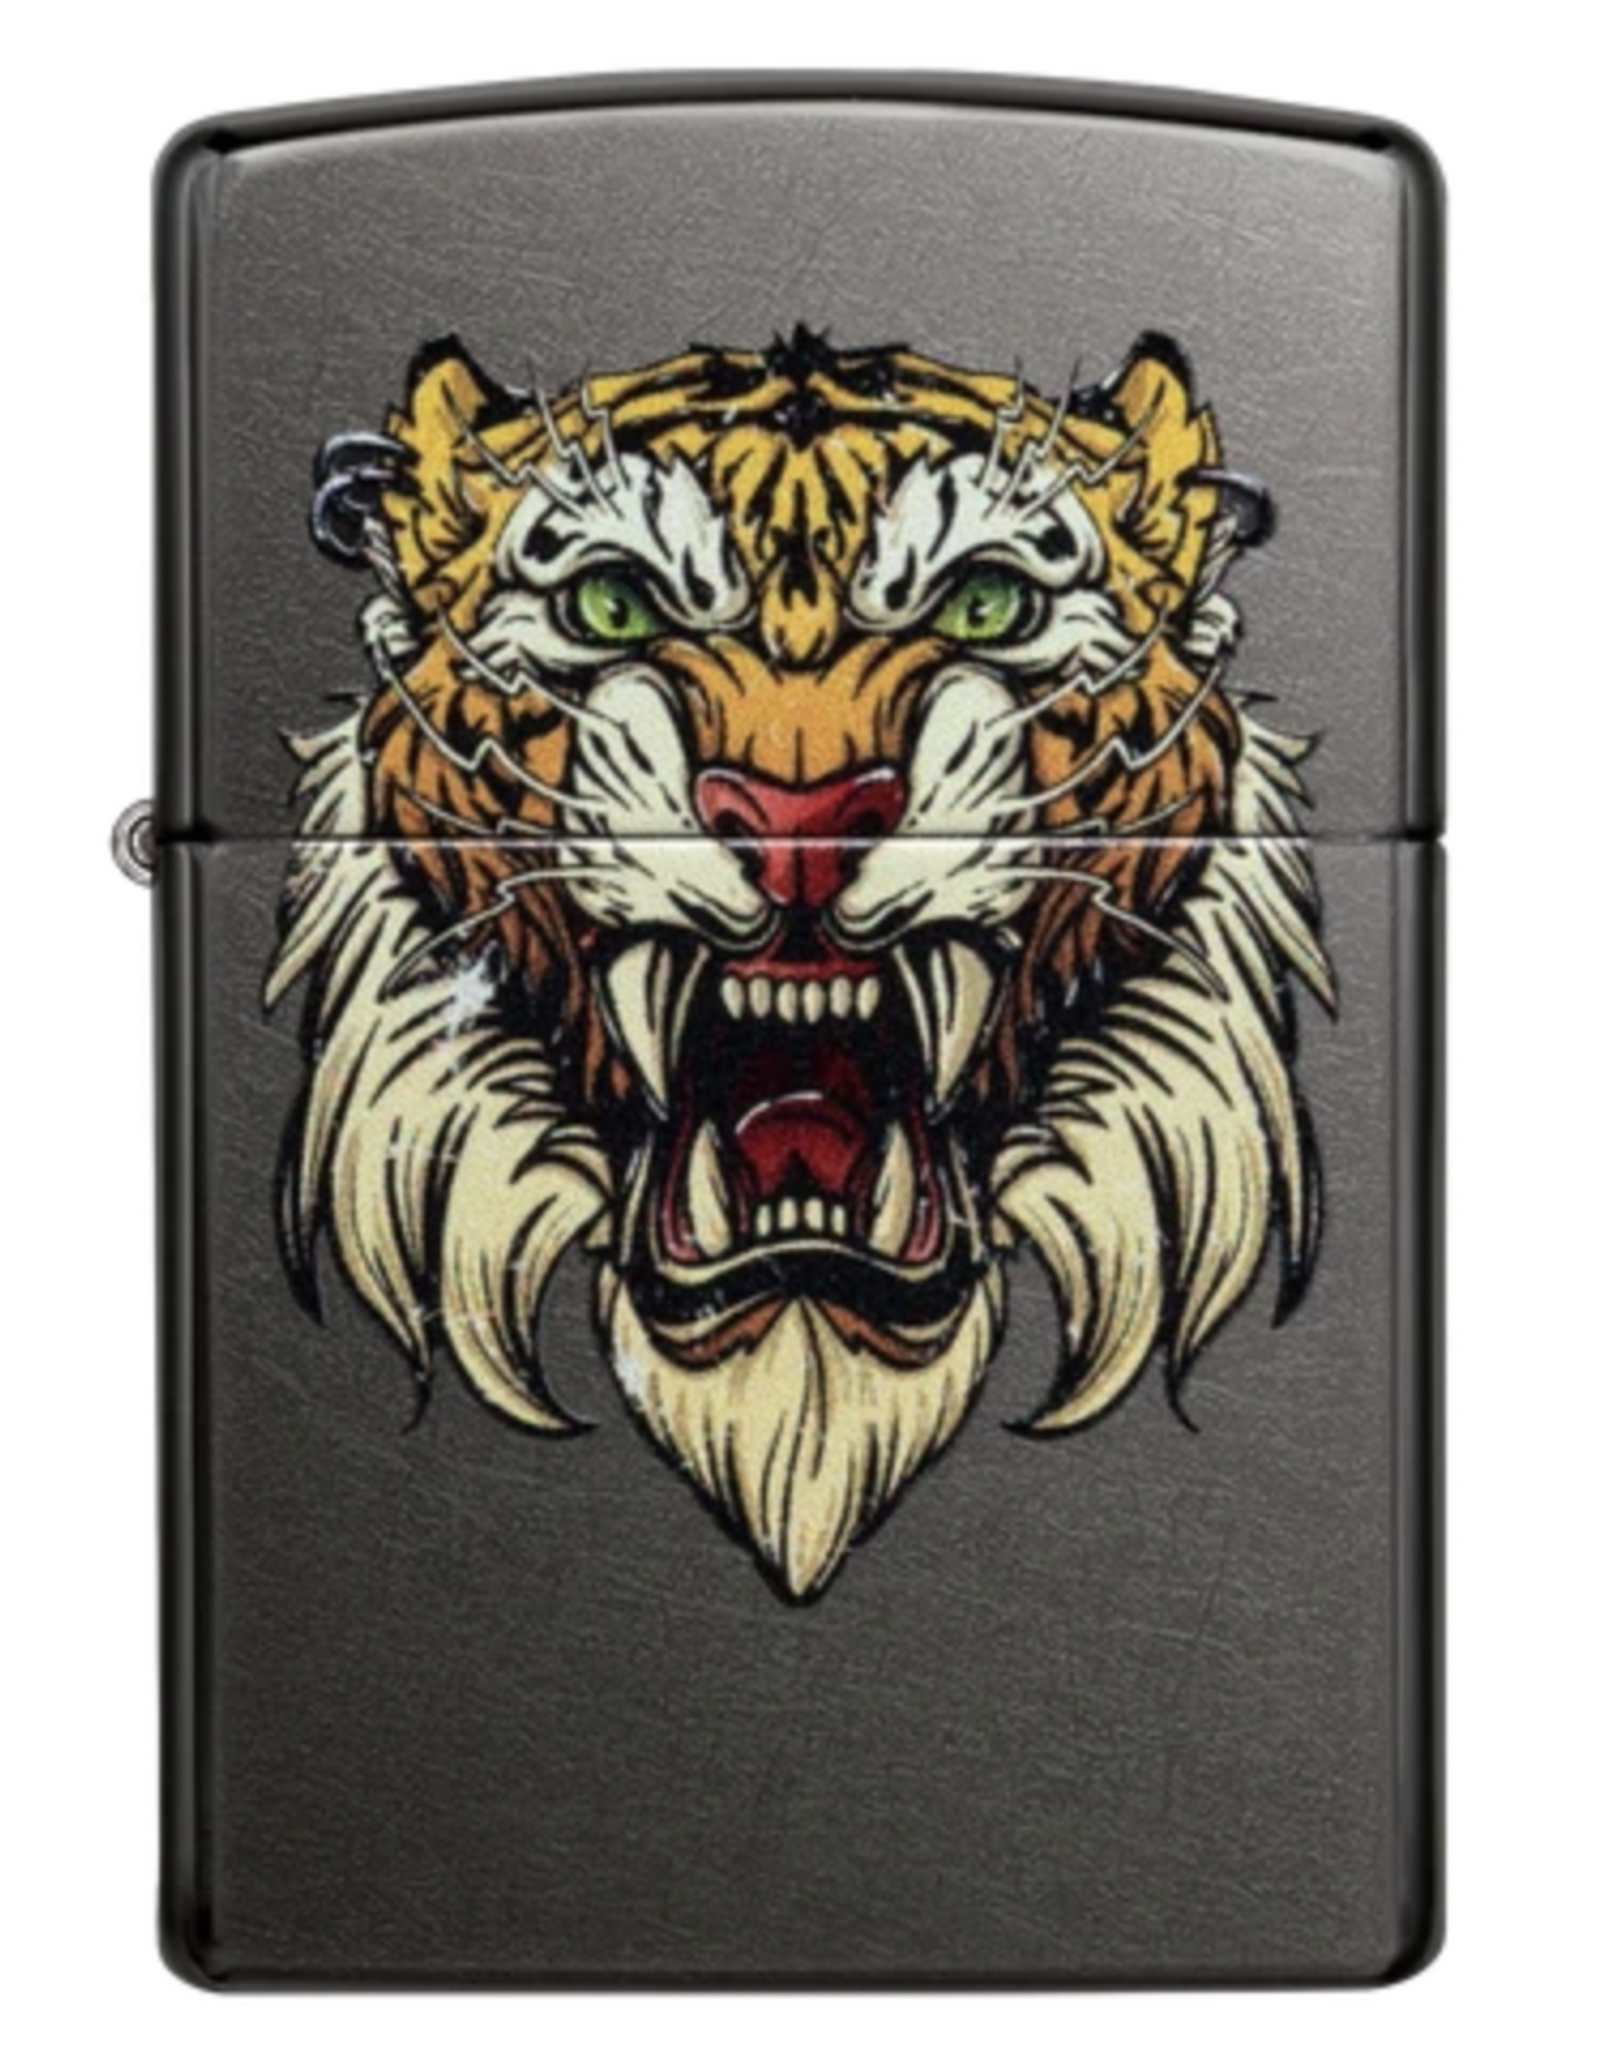 Fierce Sabertooth Tiger tattoo design' Sticker | Spreadshirt